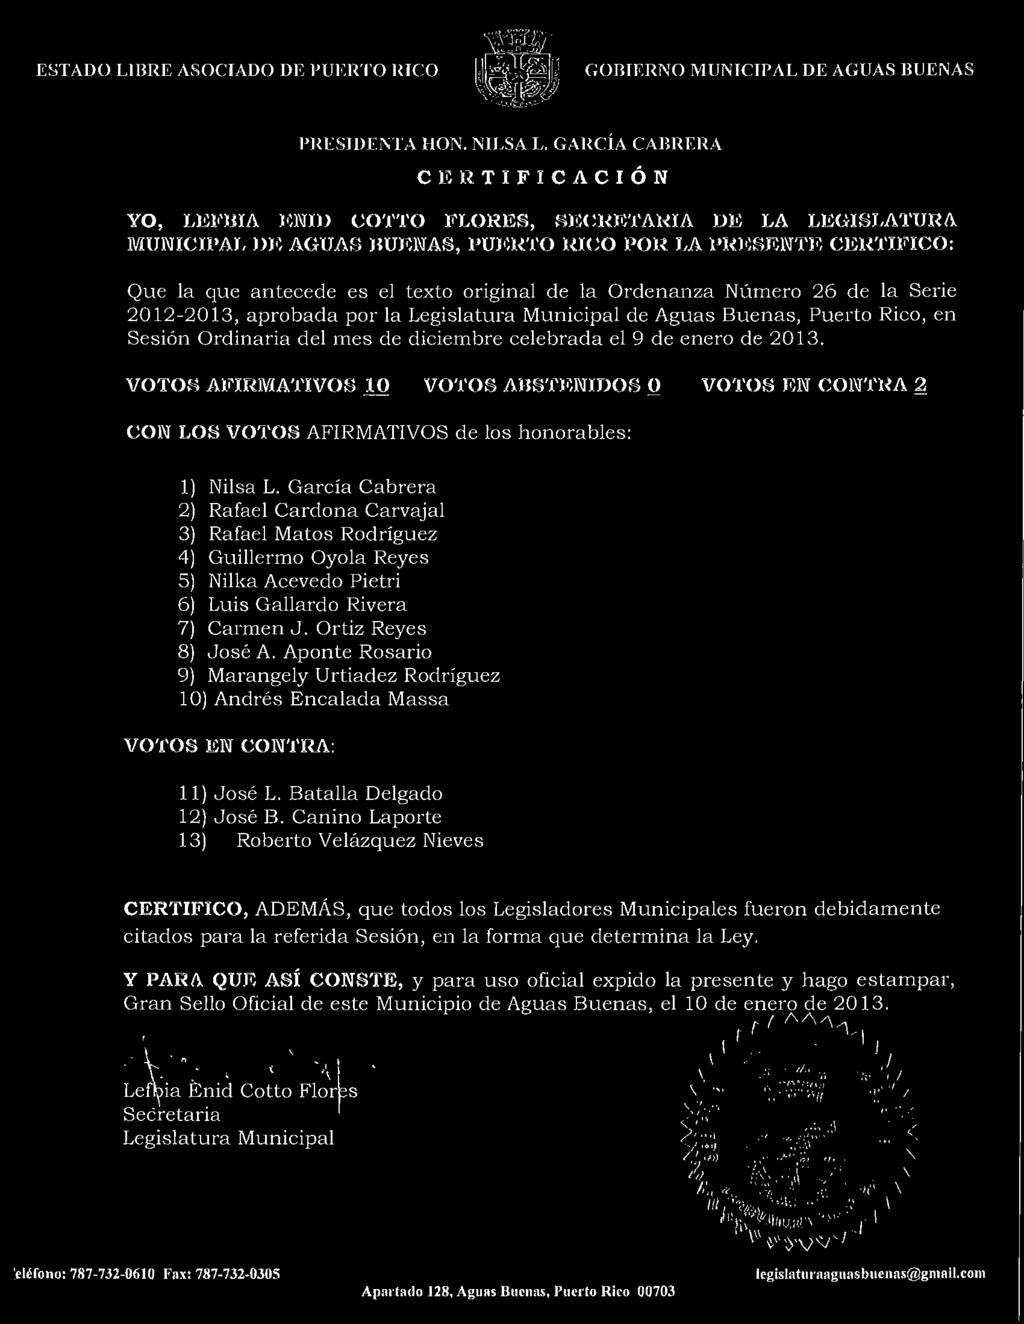 la Ordenanza Numero 26 de la Serie 2012-2013, aprobada por la Legislatura Municipal de Aguas Buenas, Puerto Rico, en Sesi6n Ordinaria del mes de diciembre celebrada el 9 de enero de 2013.